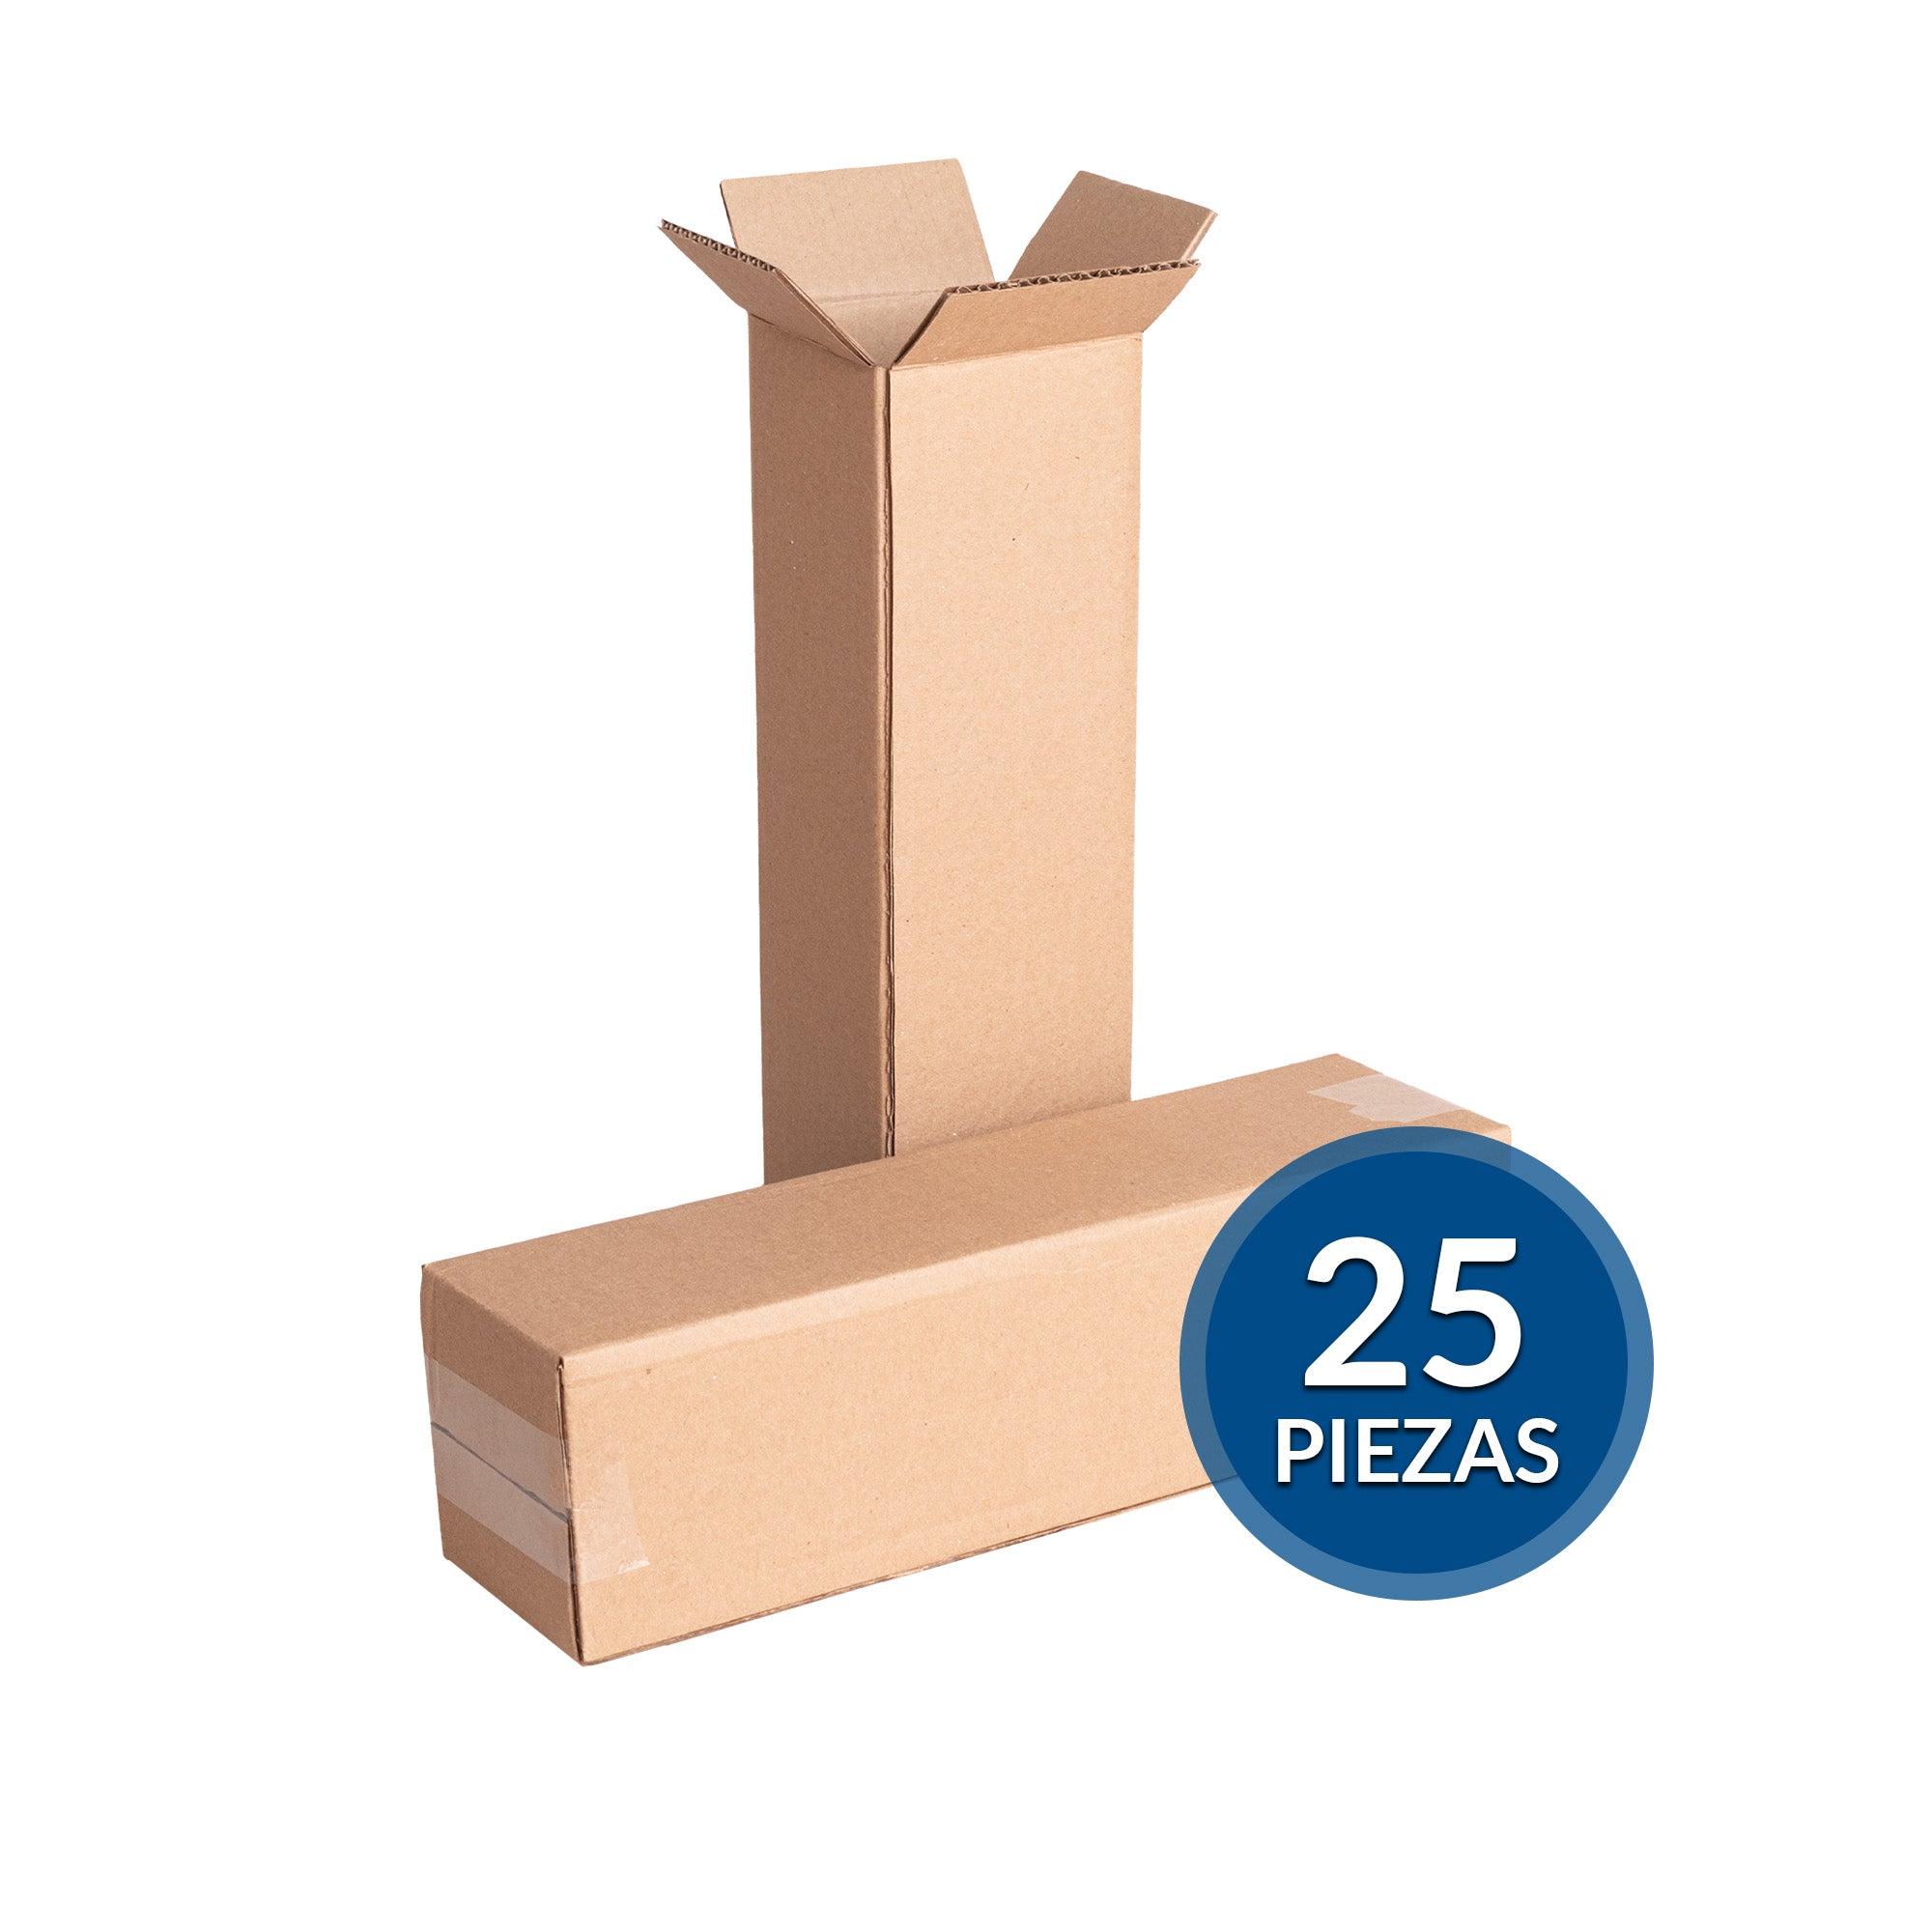 Cajas de cartón para envíos #8 – Packsys